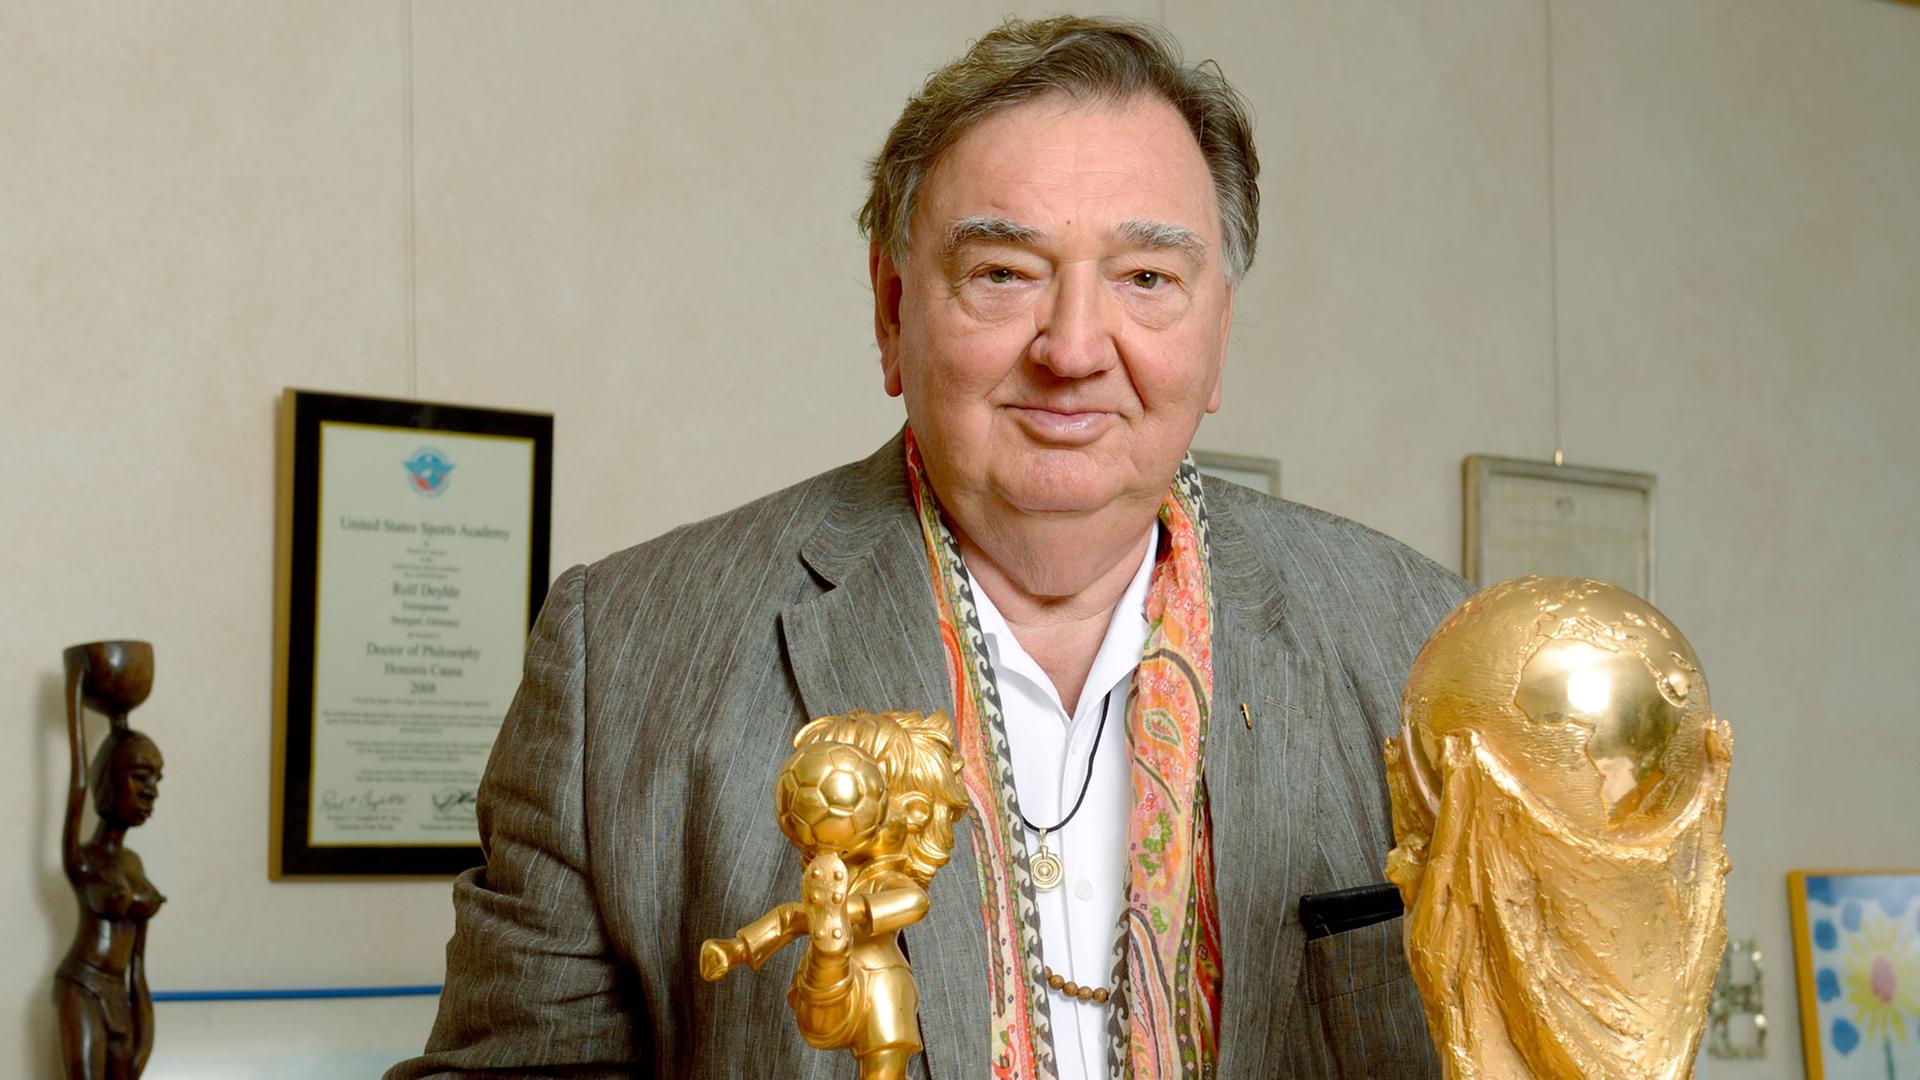 Der Unternehmer Rolf Deyhle, aufgenommen am 30.09.2013 in seinem Büro in Stuttgart (Baden-Württemberg) mit Kopien der FIFA Trophäen Fair Play und Weltpokal, die er von der FIFA als Anerkennung für seine Verdienste um den Weltfußball erhalten hat.